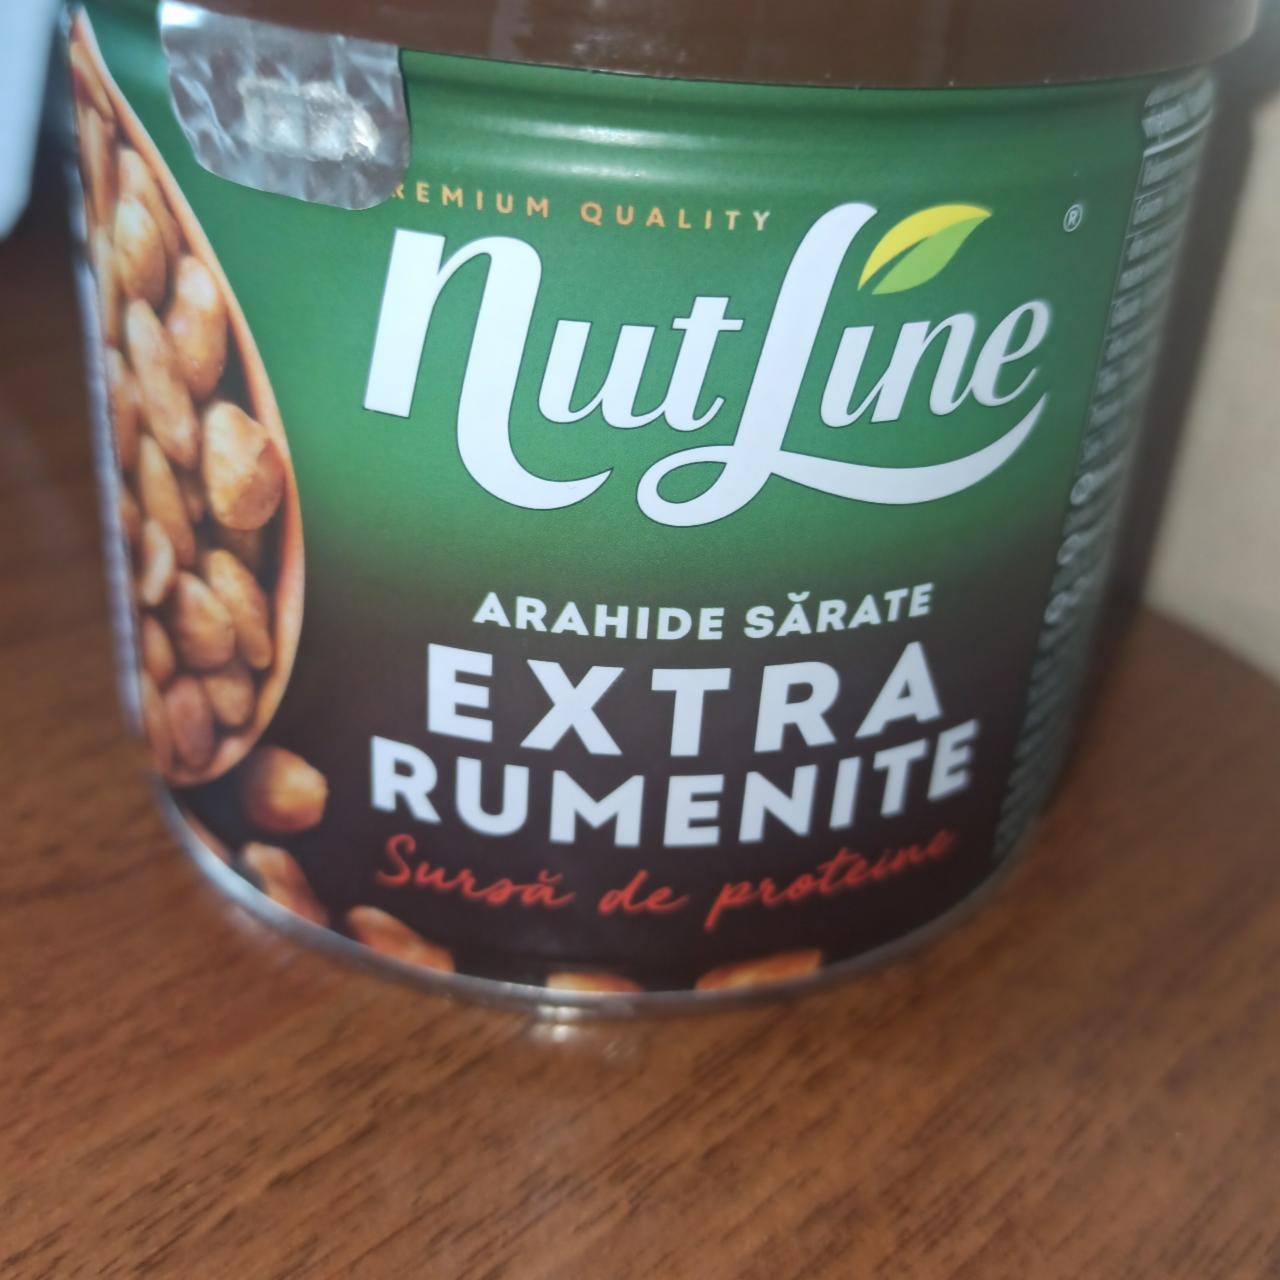 Фото - арахис запечённый обжаренный в масле соленый Nutline